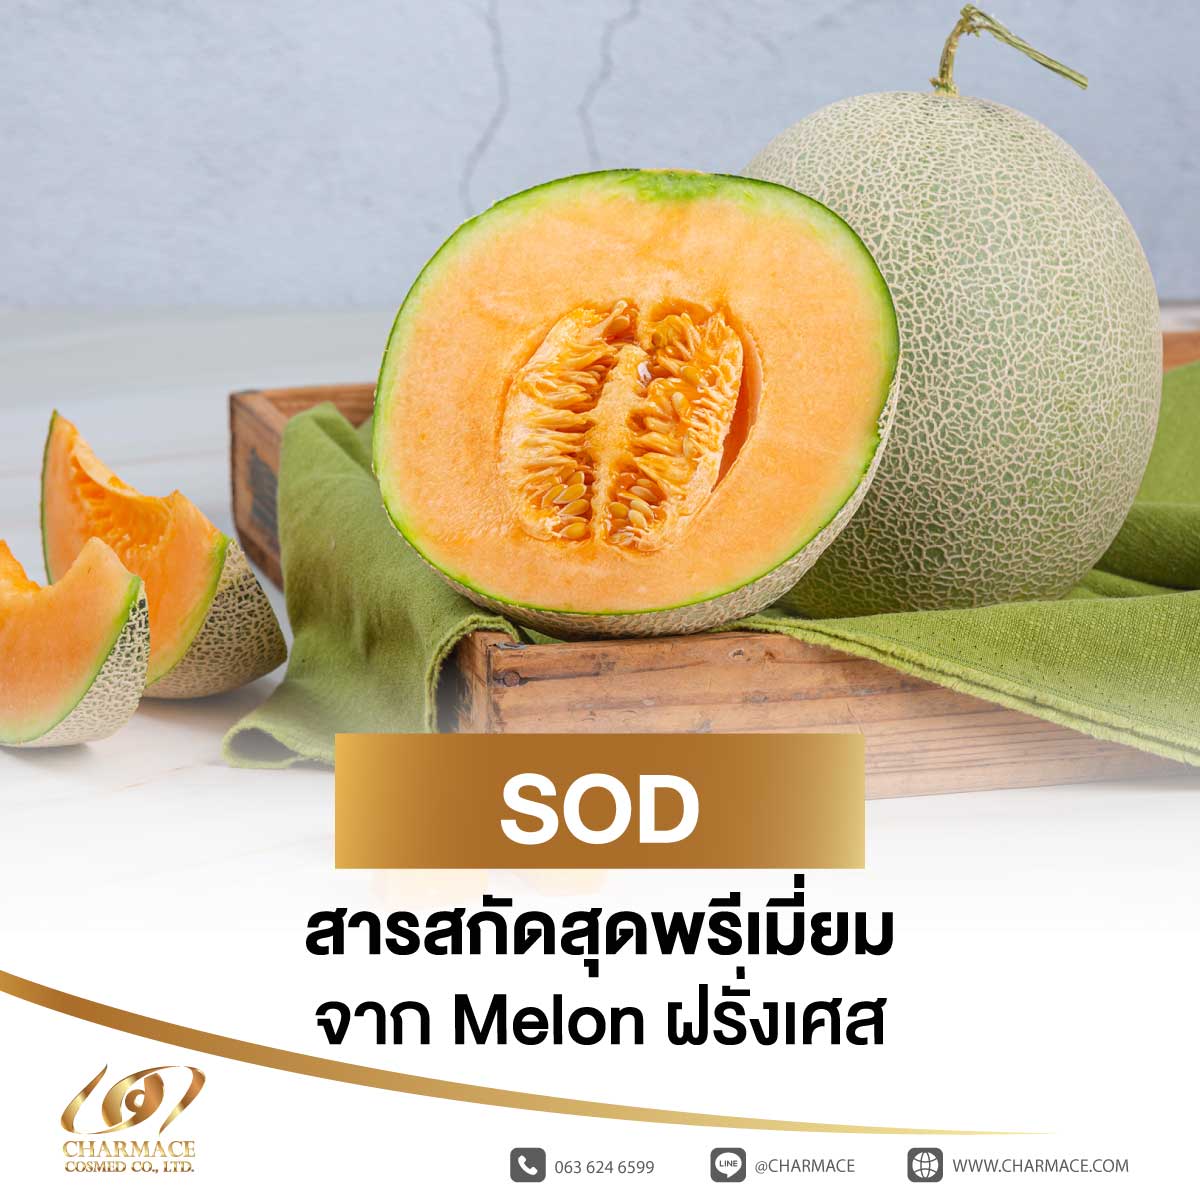 SOD สารสกัดสุดพรีเมี่ยม จาก Melon ฝรั่งเศส